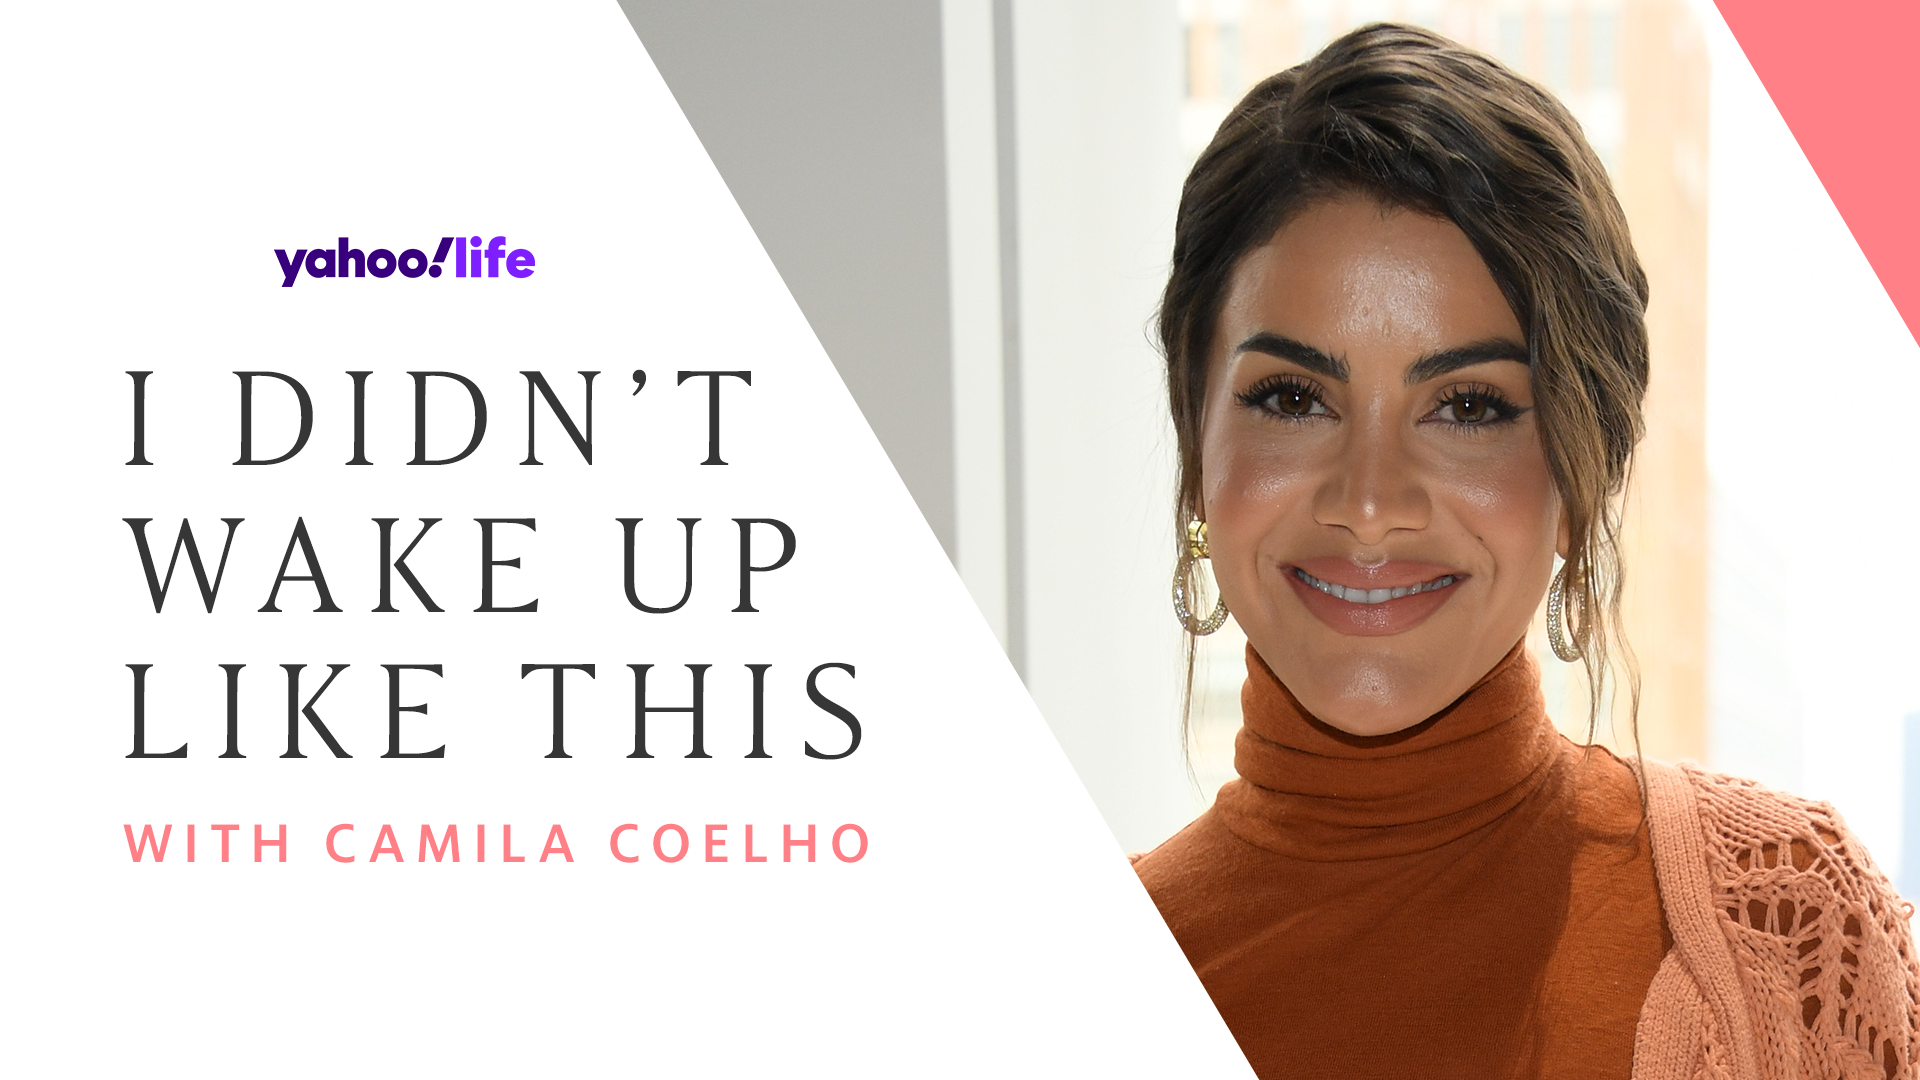 Camila Coelho's Daily Beauty & Wellness Routine